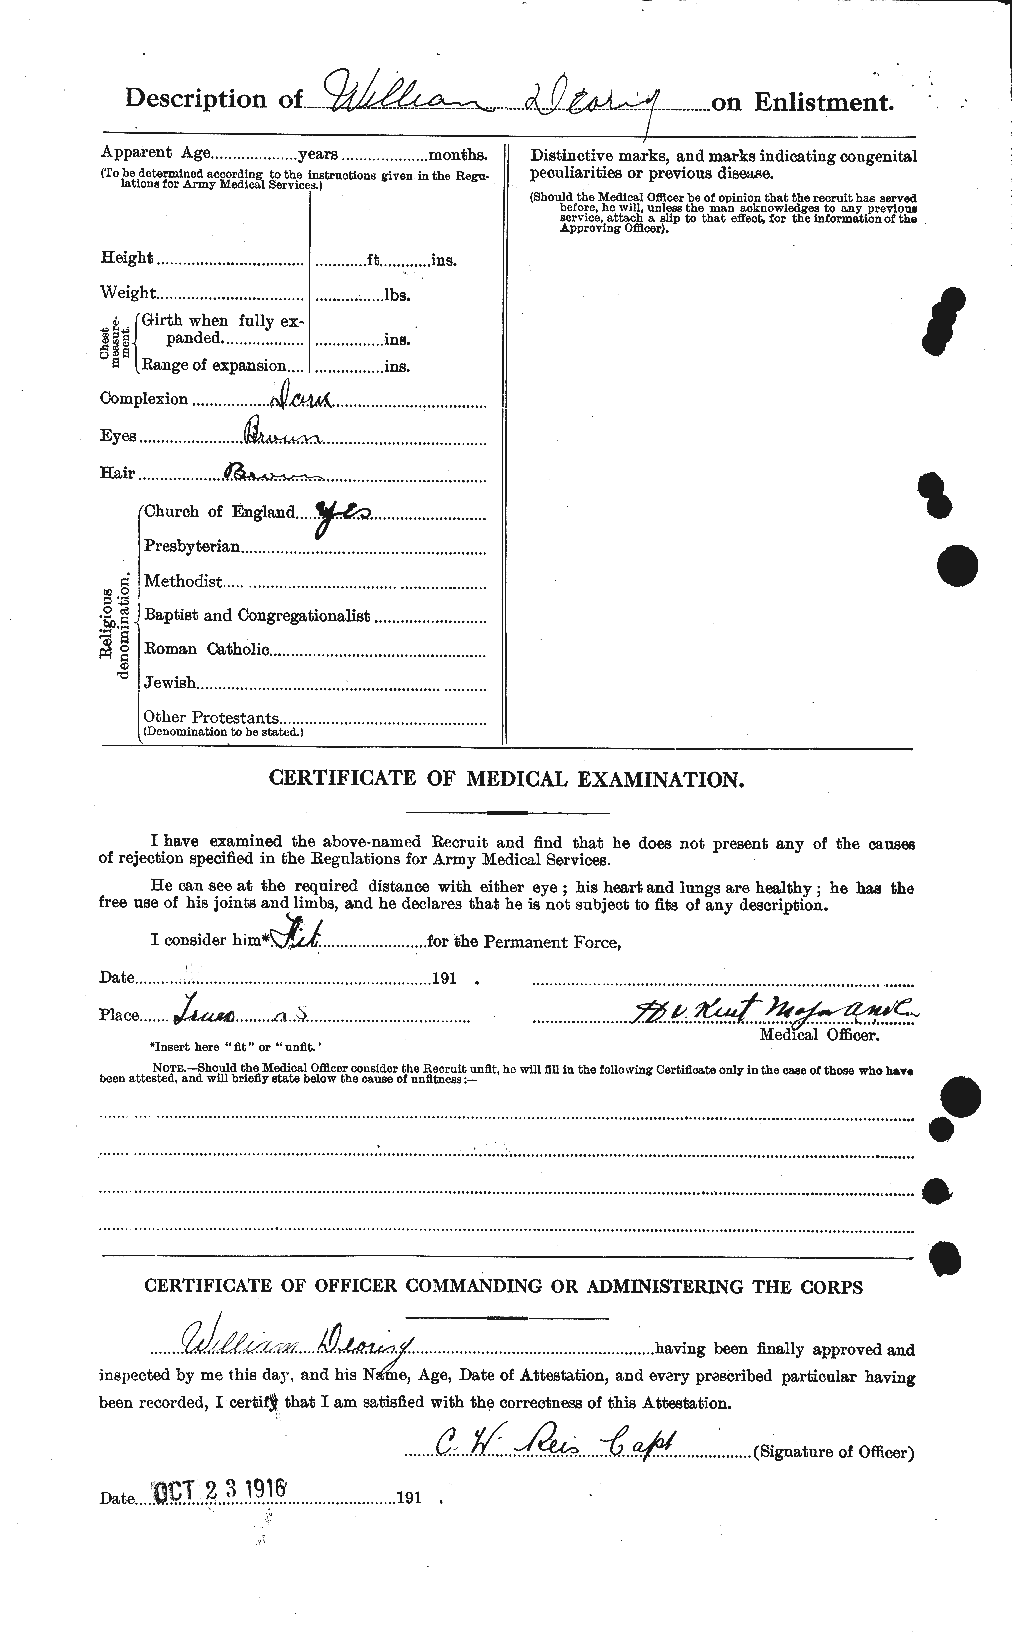 Dossiers du Personnel de la Première Guerre mondiale - CEC 280108b